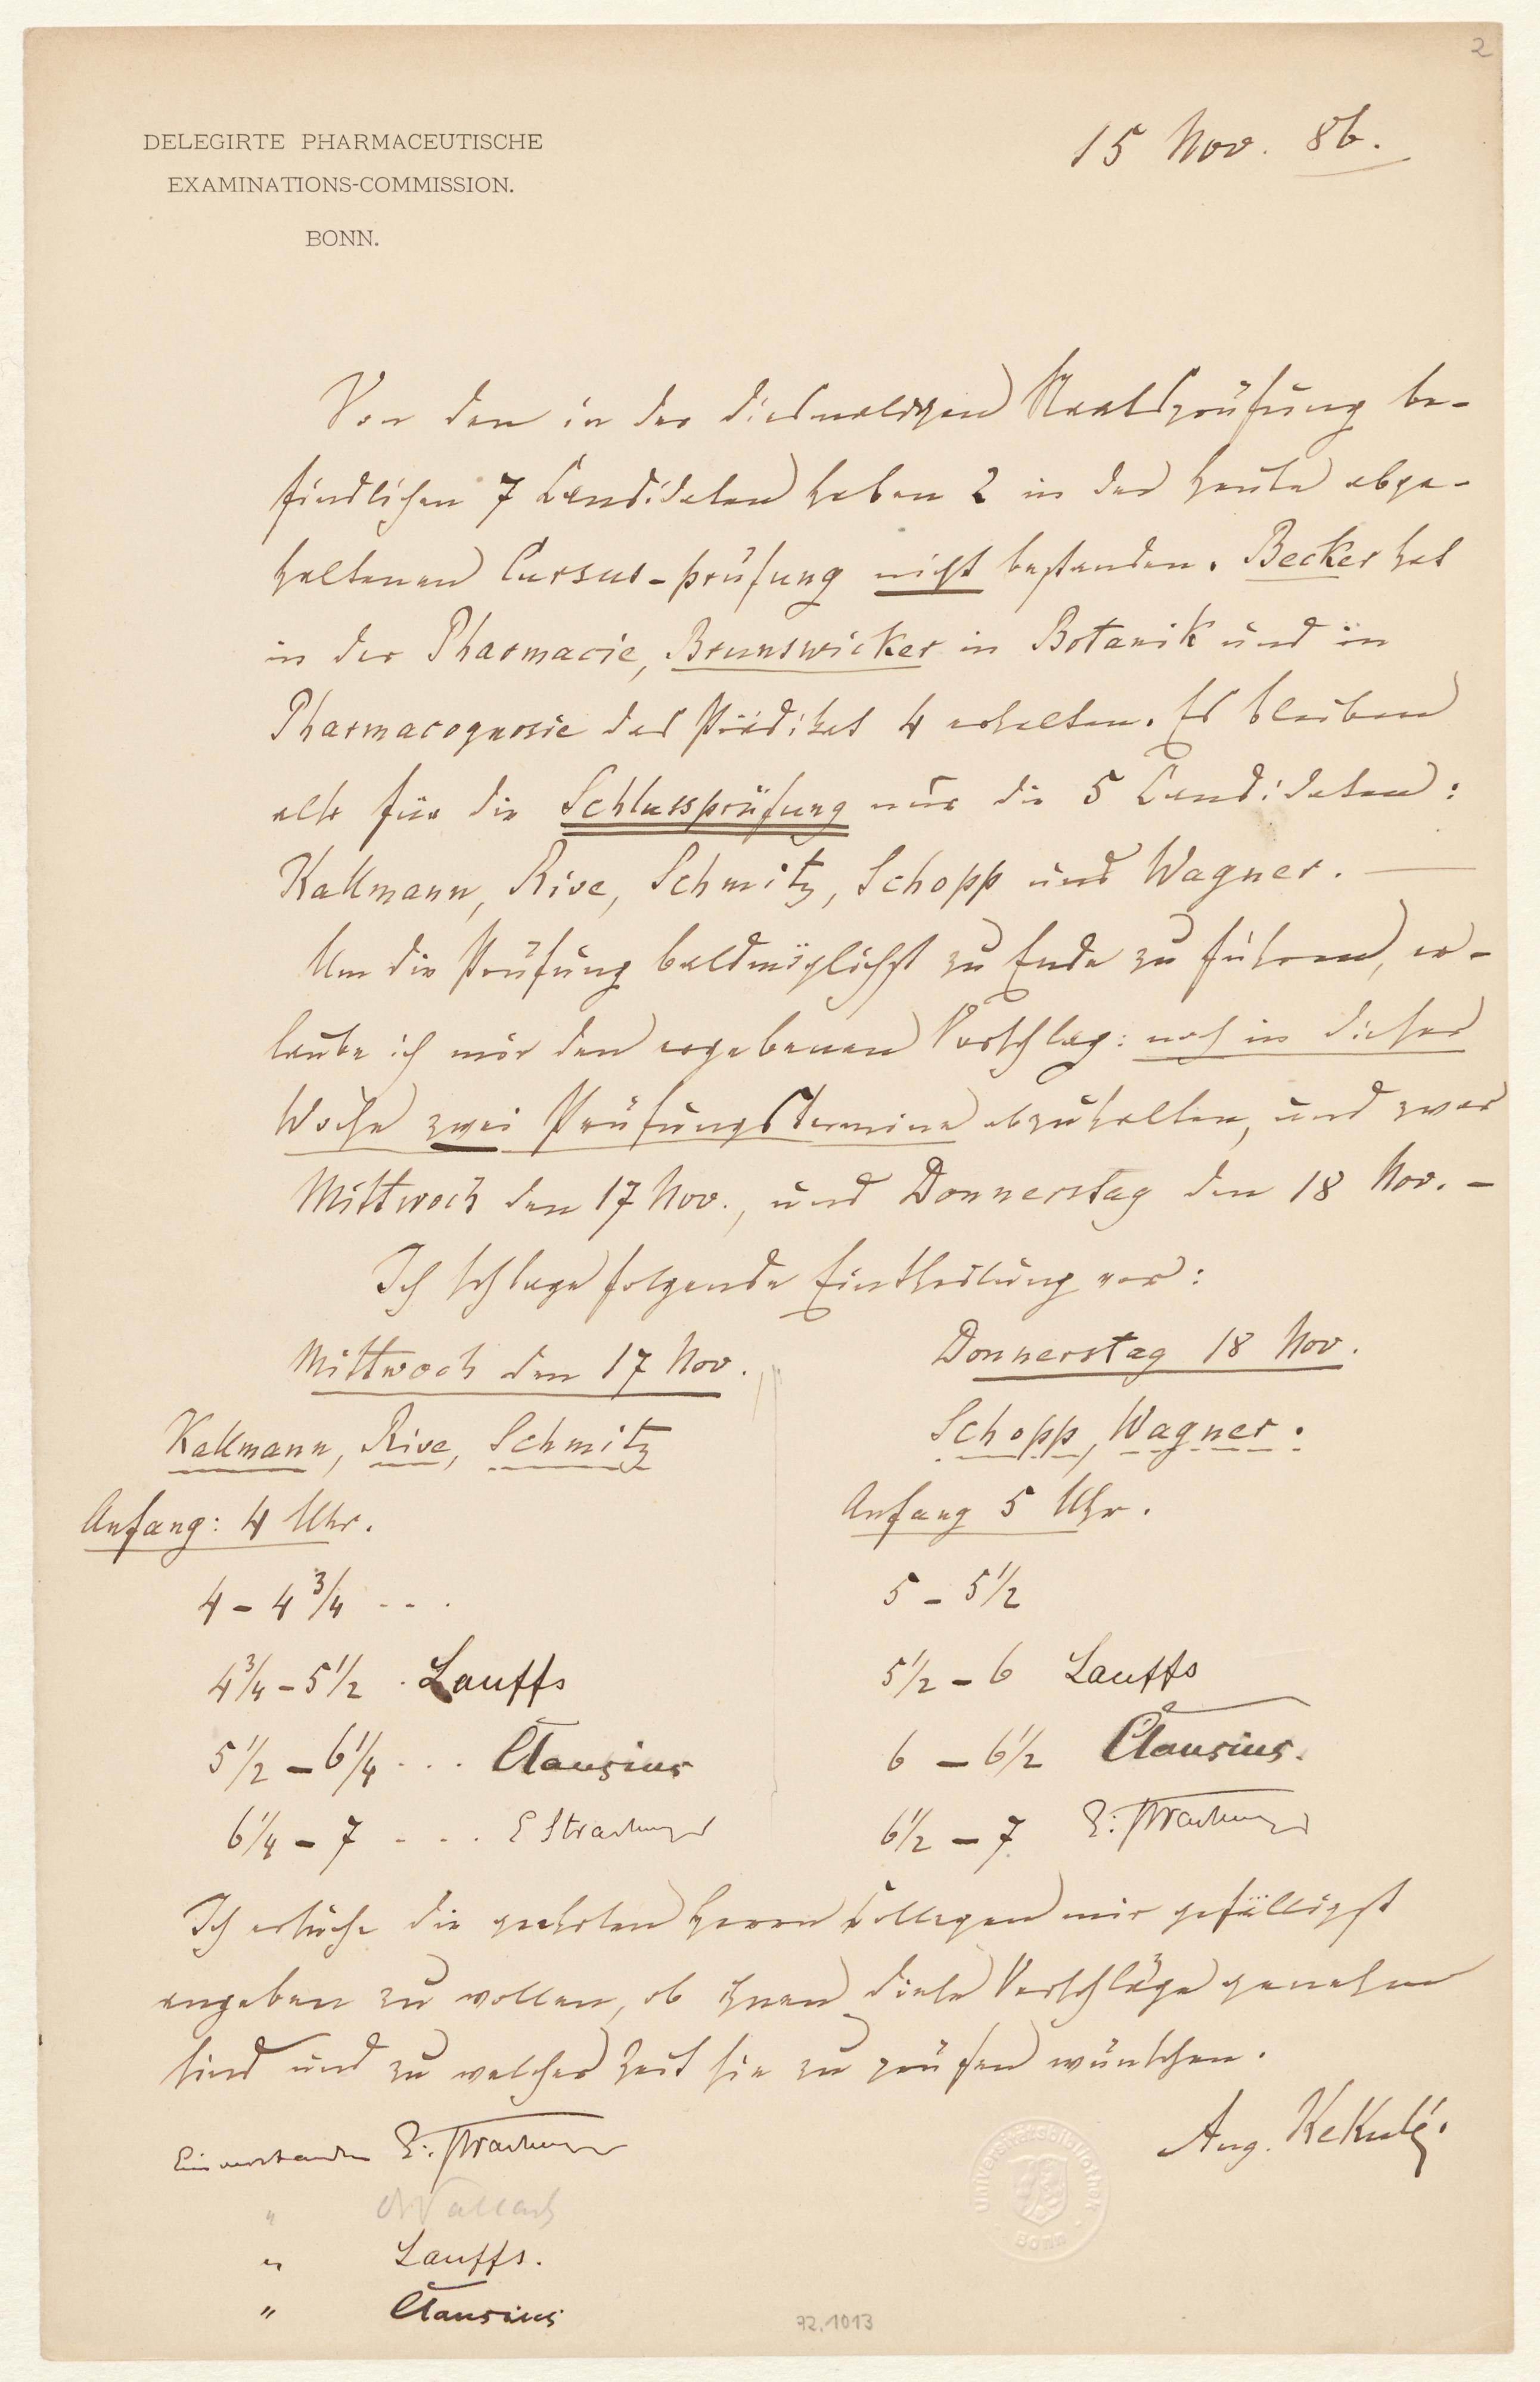 [Plan für die] Schlussprüfung [der] pharmaceutischen Examinations-Commission / August Kekulé. Bonn, 15.11.1886